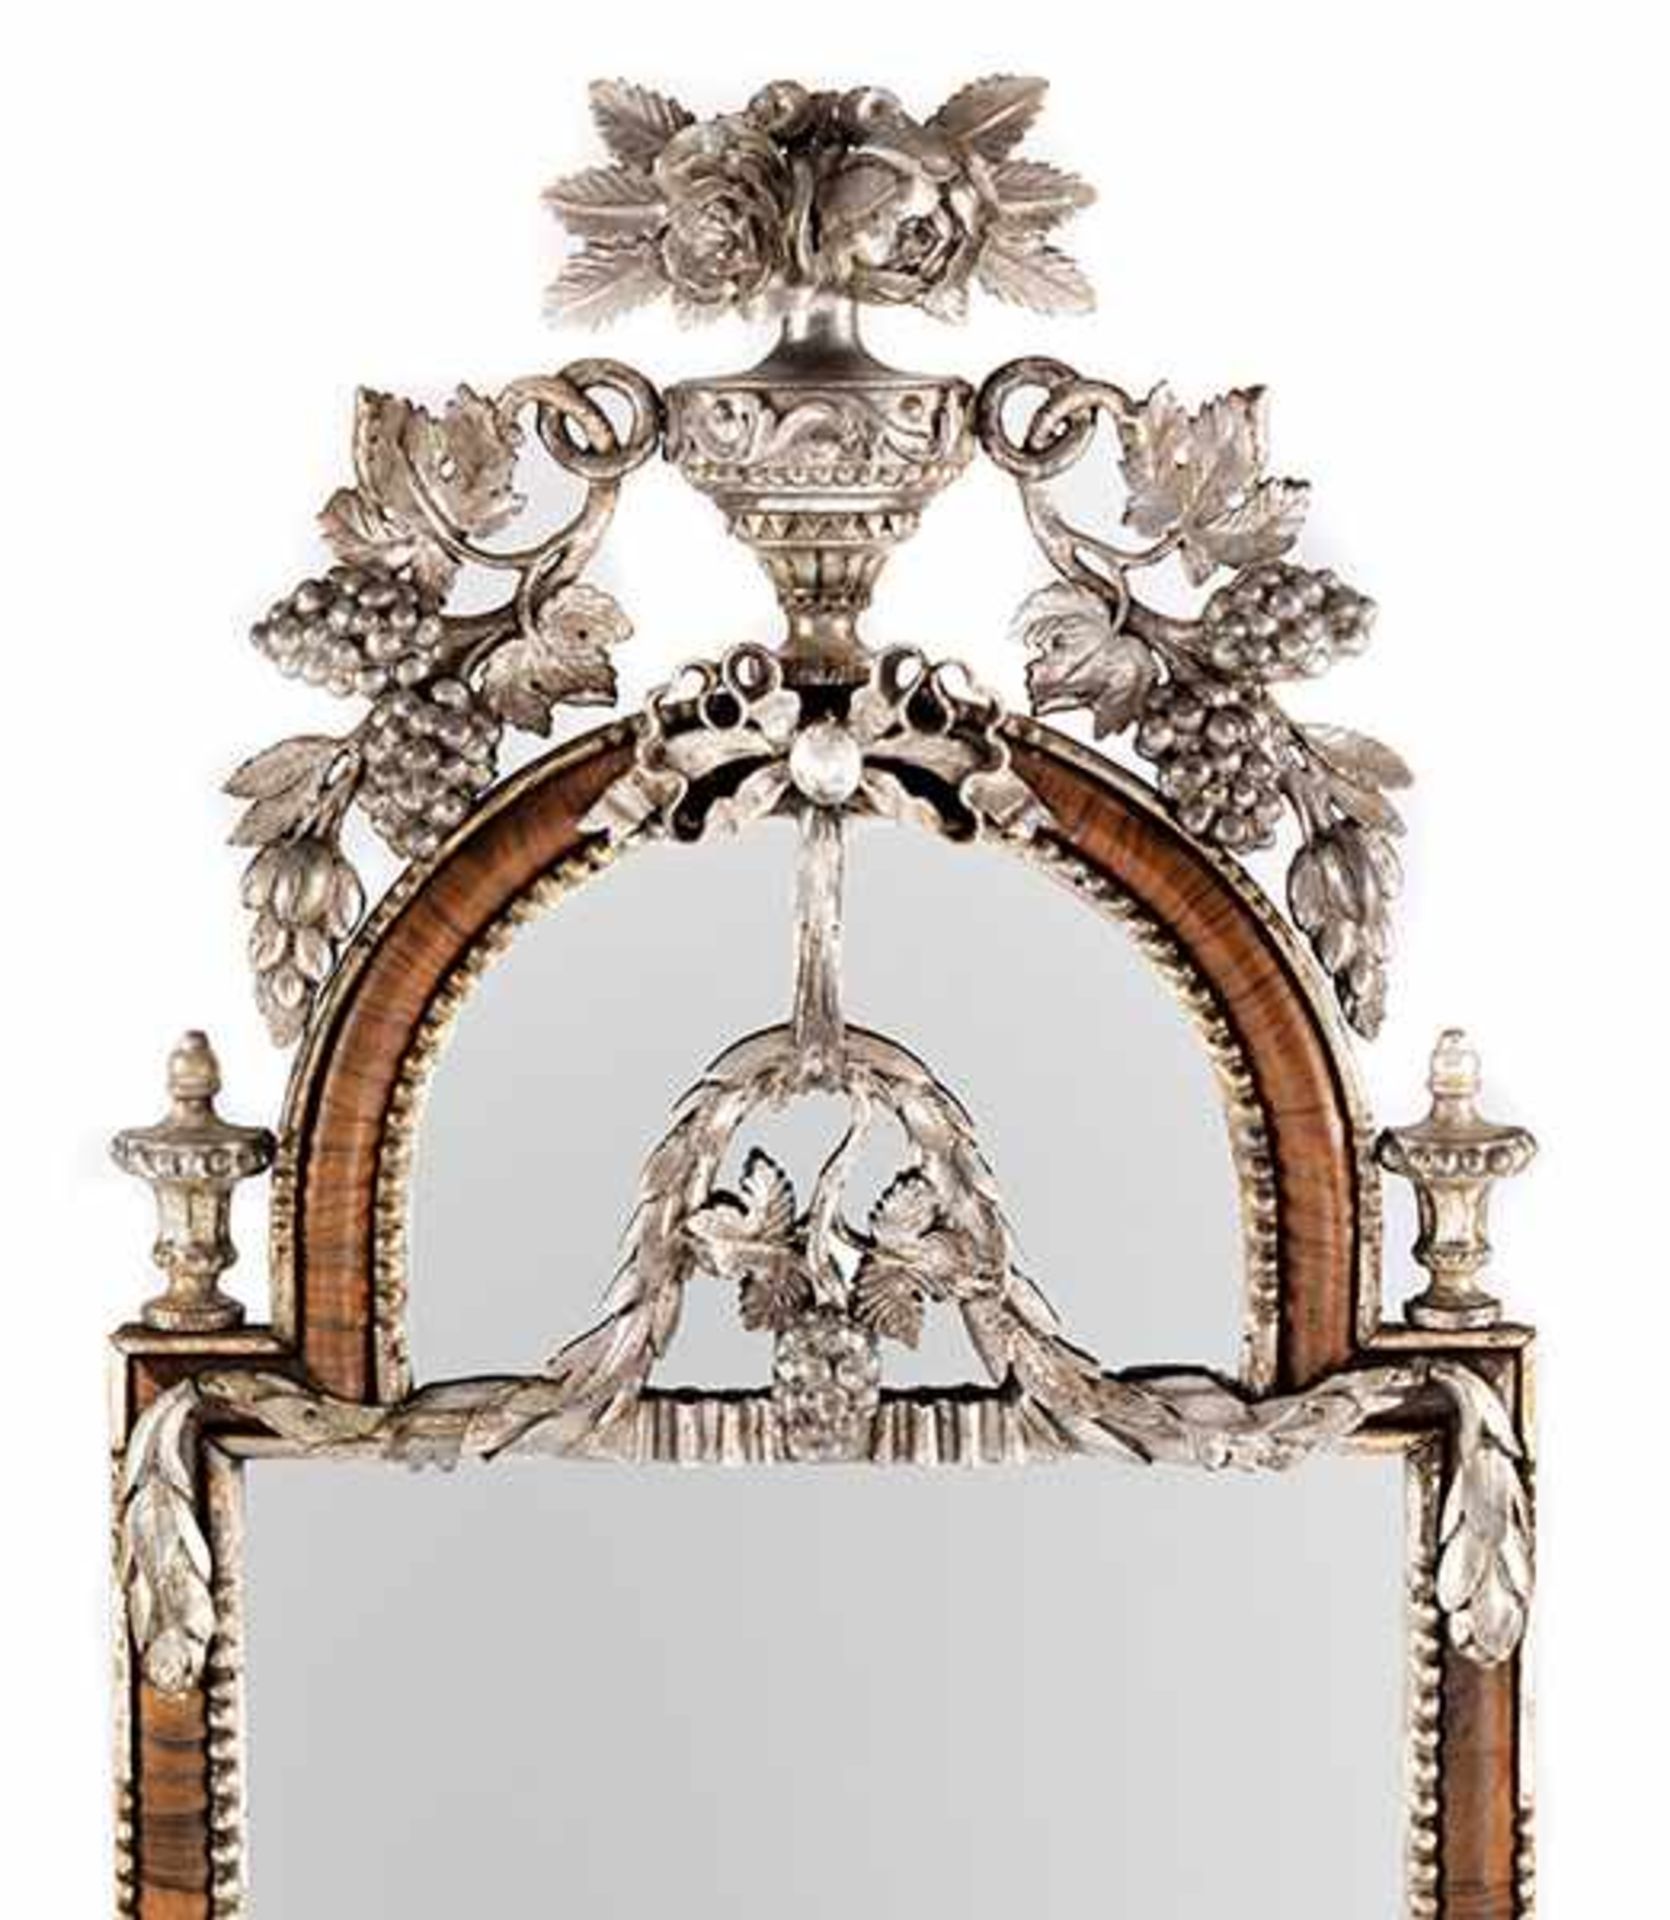 Altonaer Spiegel Höhe: 128 cm. Breite: 52,5 cm. Altona, um 1770/80. Weichholz, geschnitzt, - Bild 2 aus 3